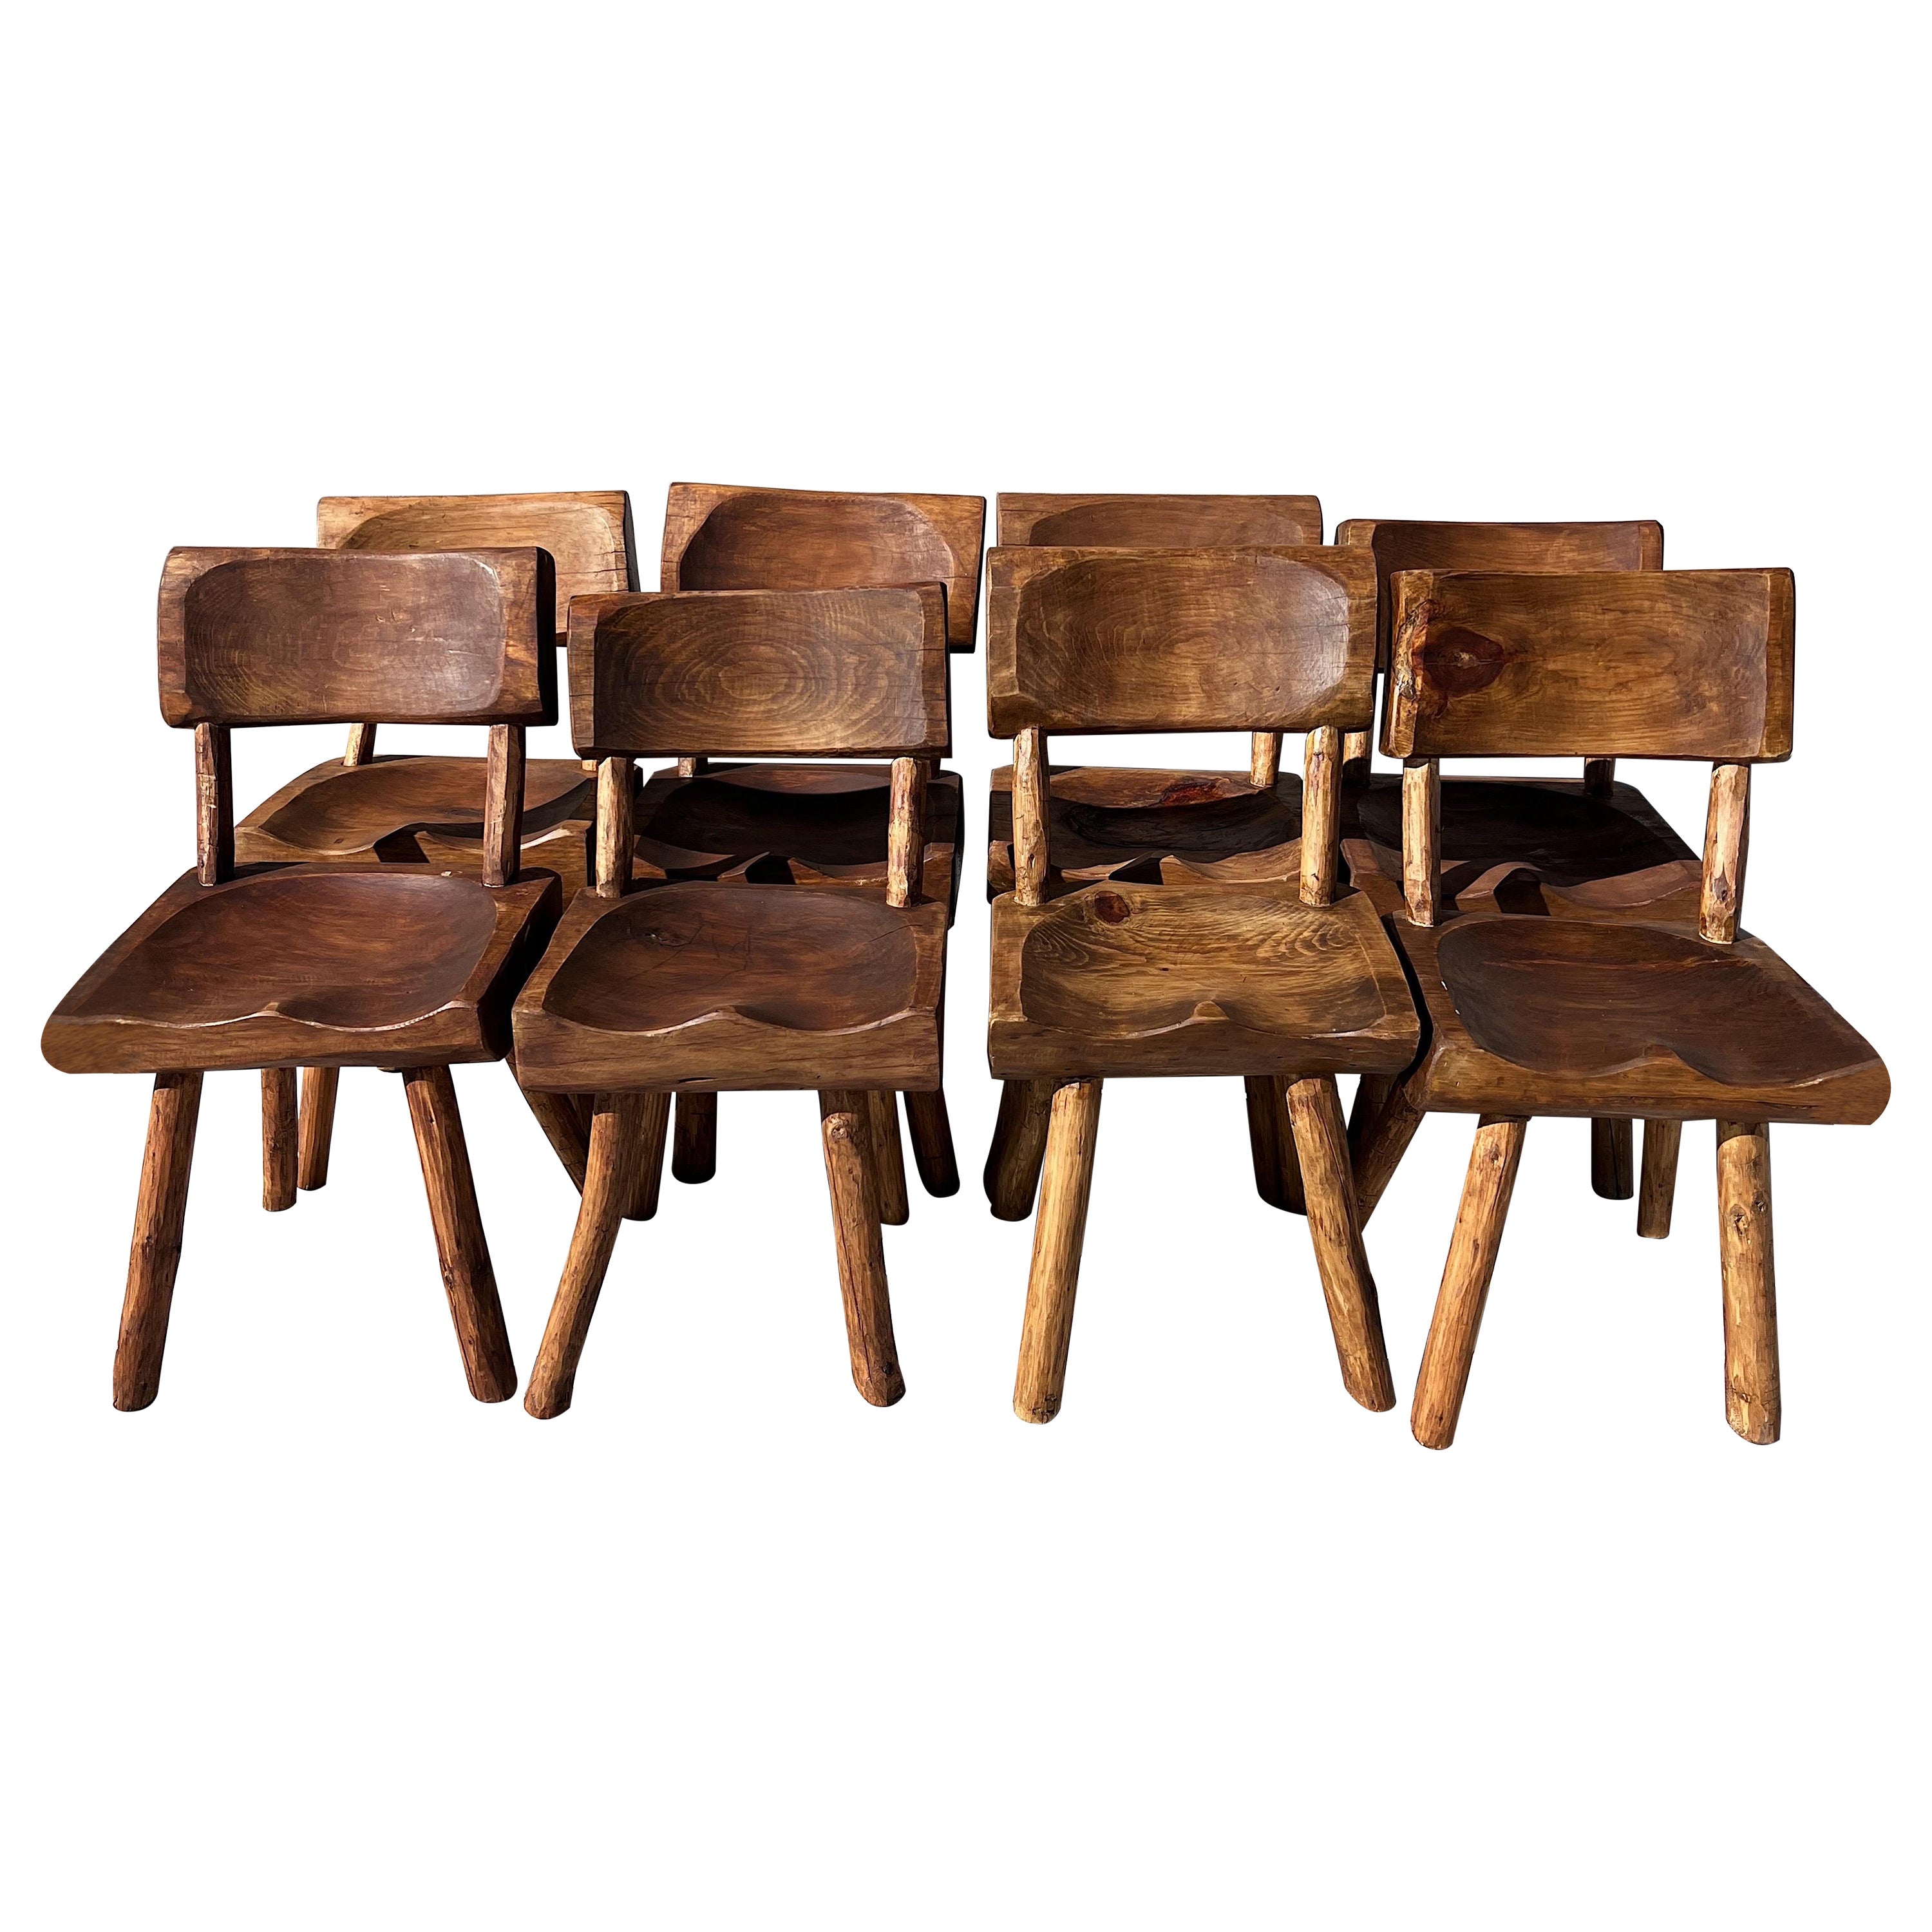 Vintage Wabi Sabi Artisanal Wood Dining Chairs - Set of 8